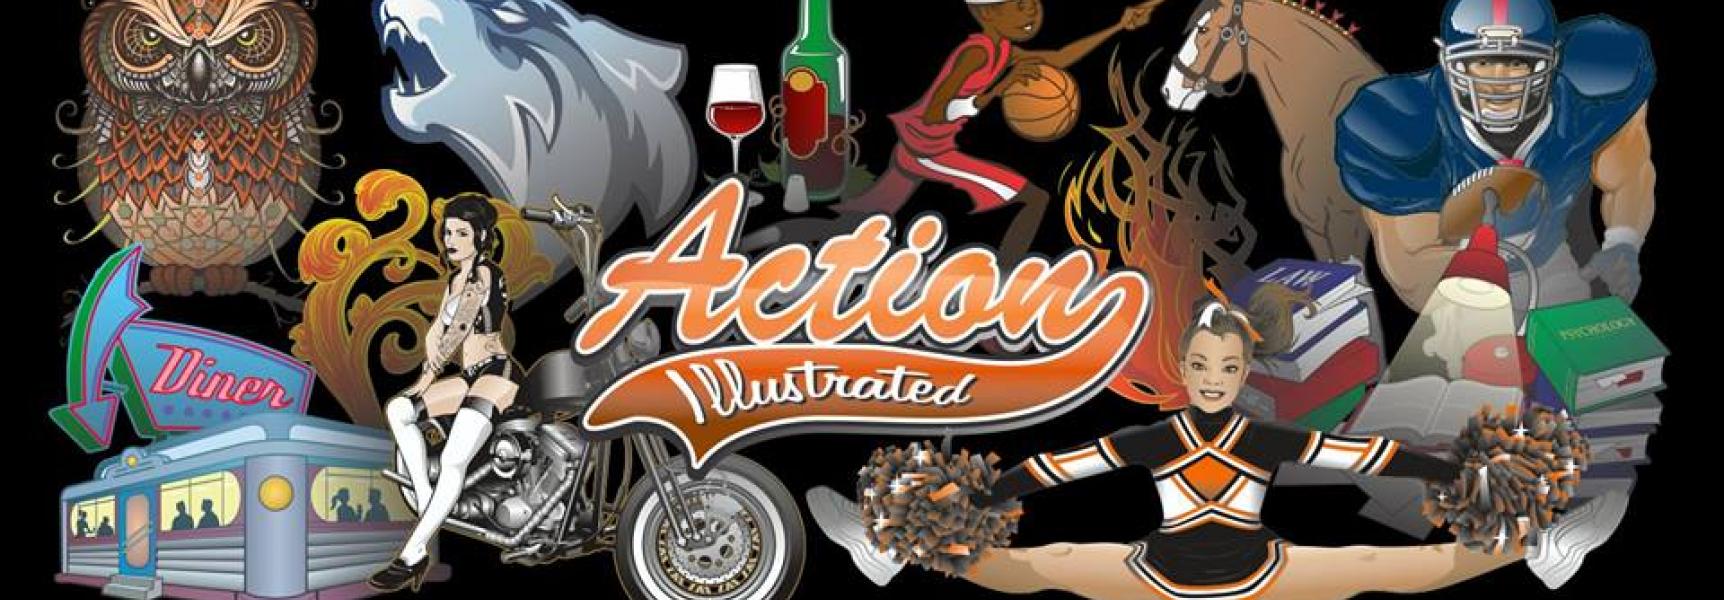 action art teaser logo